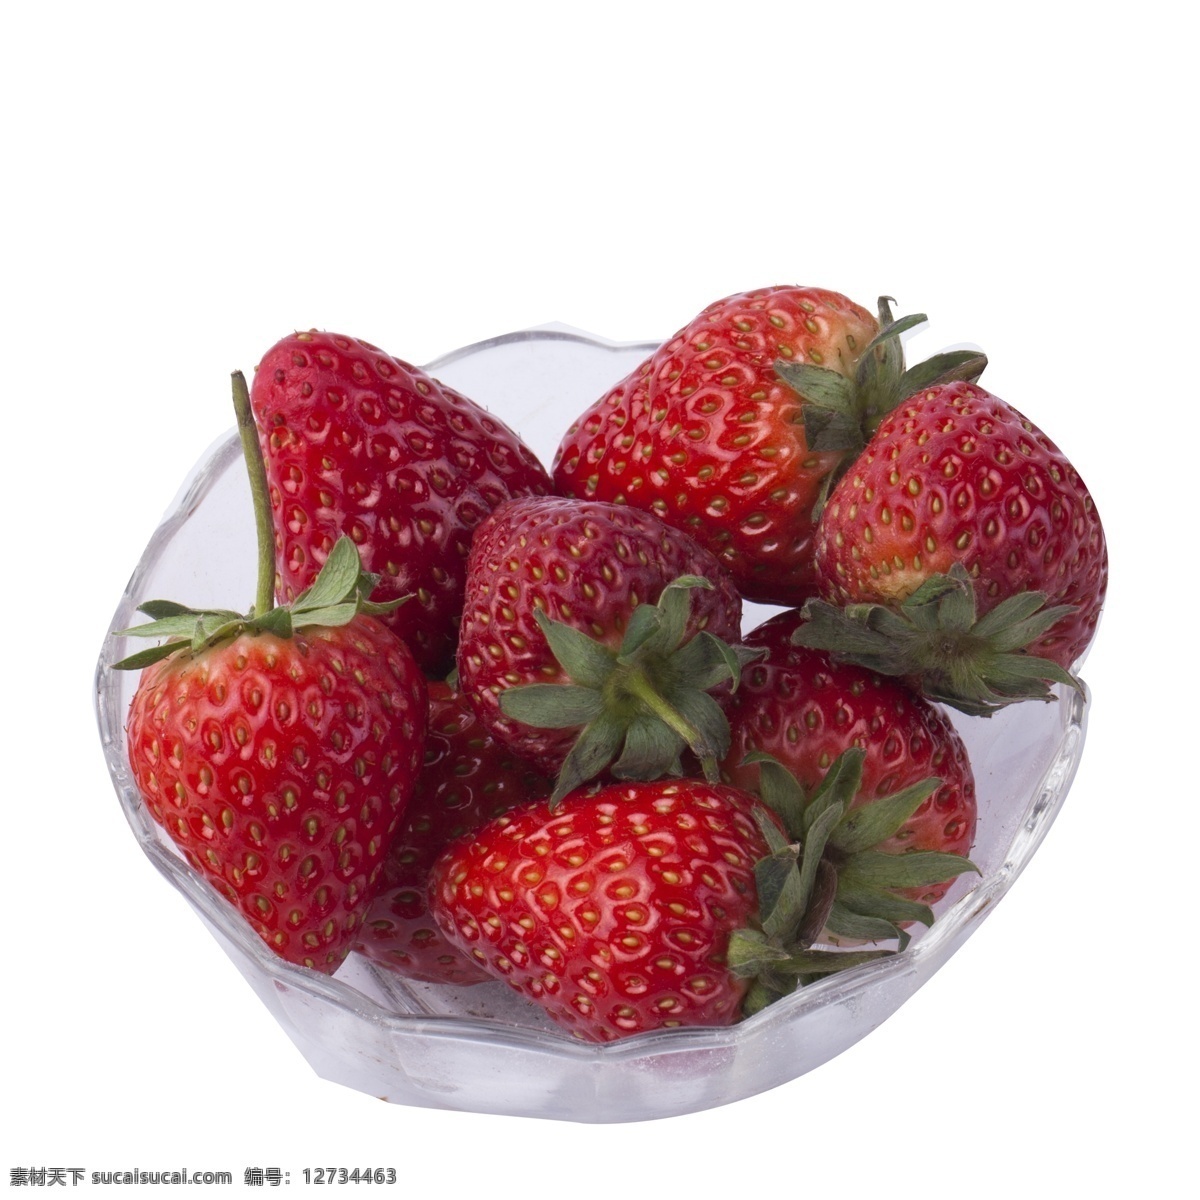 碗 新鲜 草莓 免 抠 图 新鲜水果 透明的盒子 水果 红通通 草莓水果 美味的草莓 甜甜的水果 红色的草莓 免抠图